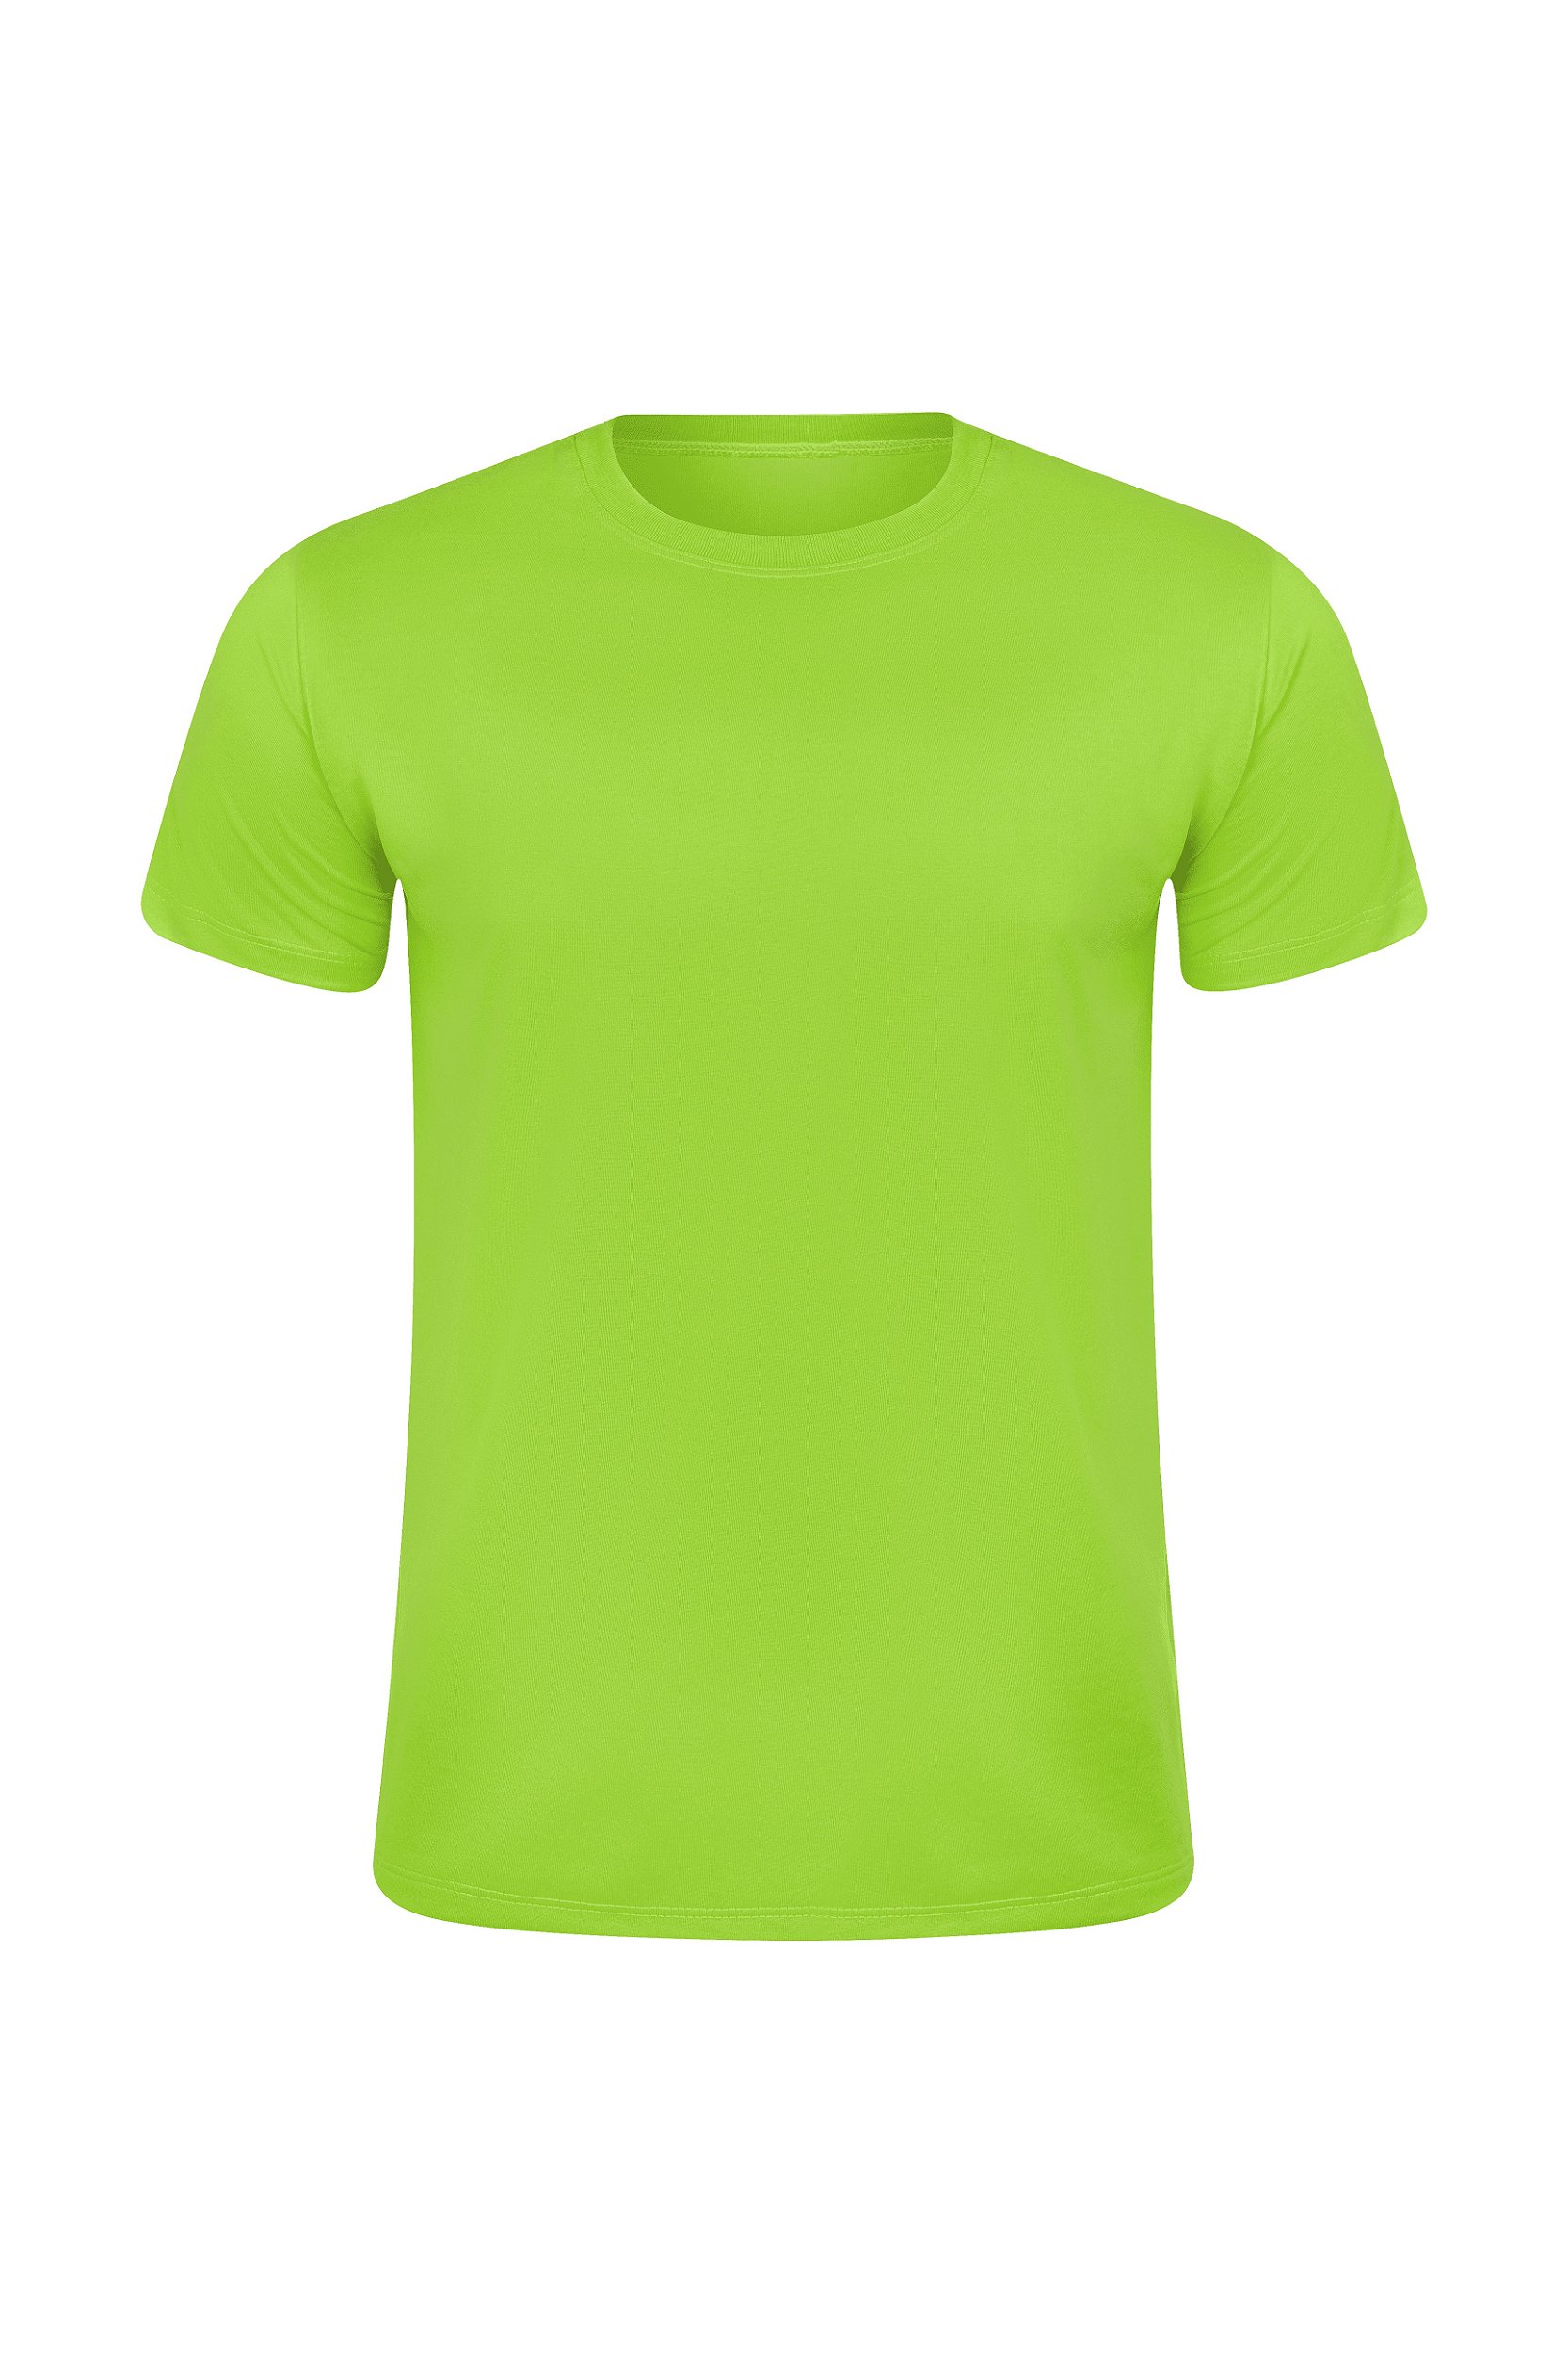 Camiseta Masculina Básica Gola Careca-Malha 100% Poliéster Fiado-Cor Verde  Limão - Konfex Camisetas Para Sublimação